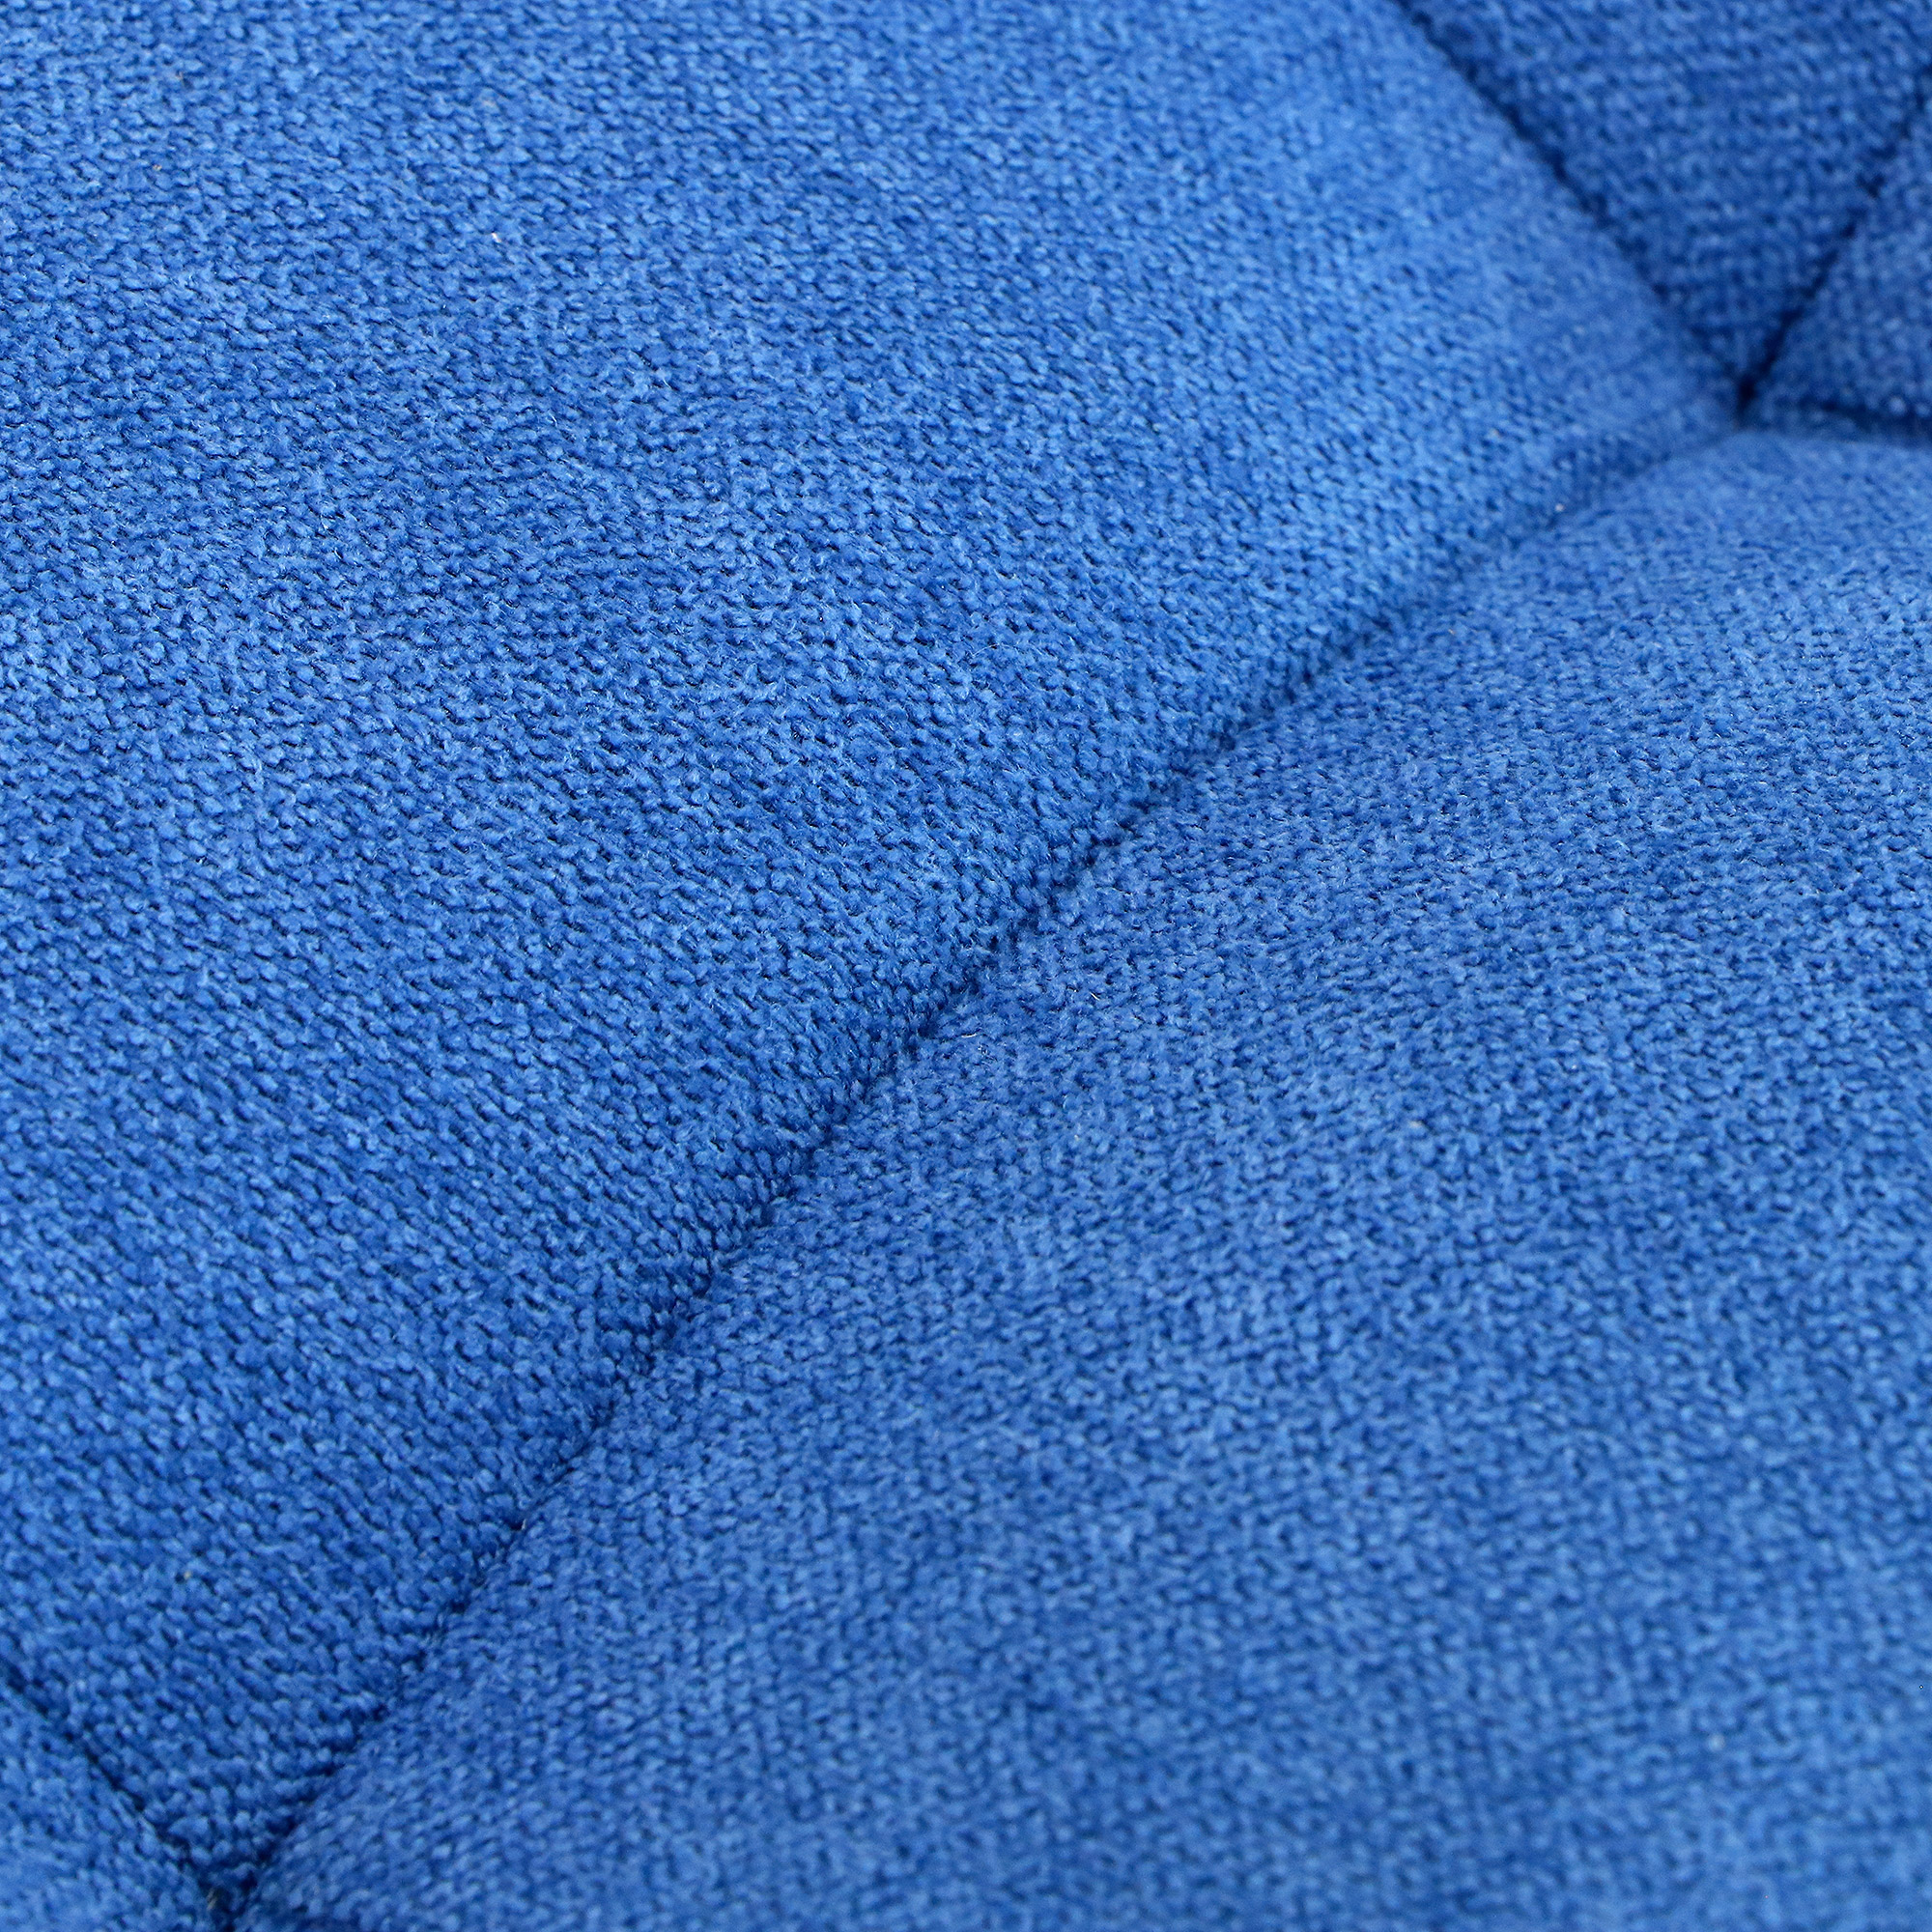 Банкетка Dreambag модерна синий велюр 46х46х46, размер 46х46х46 см - фото 5